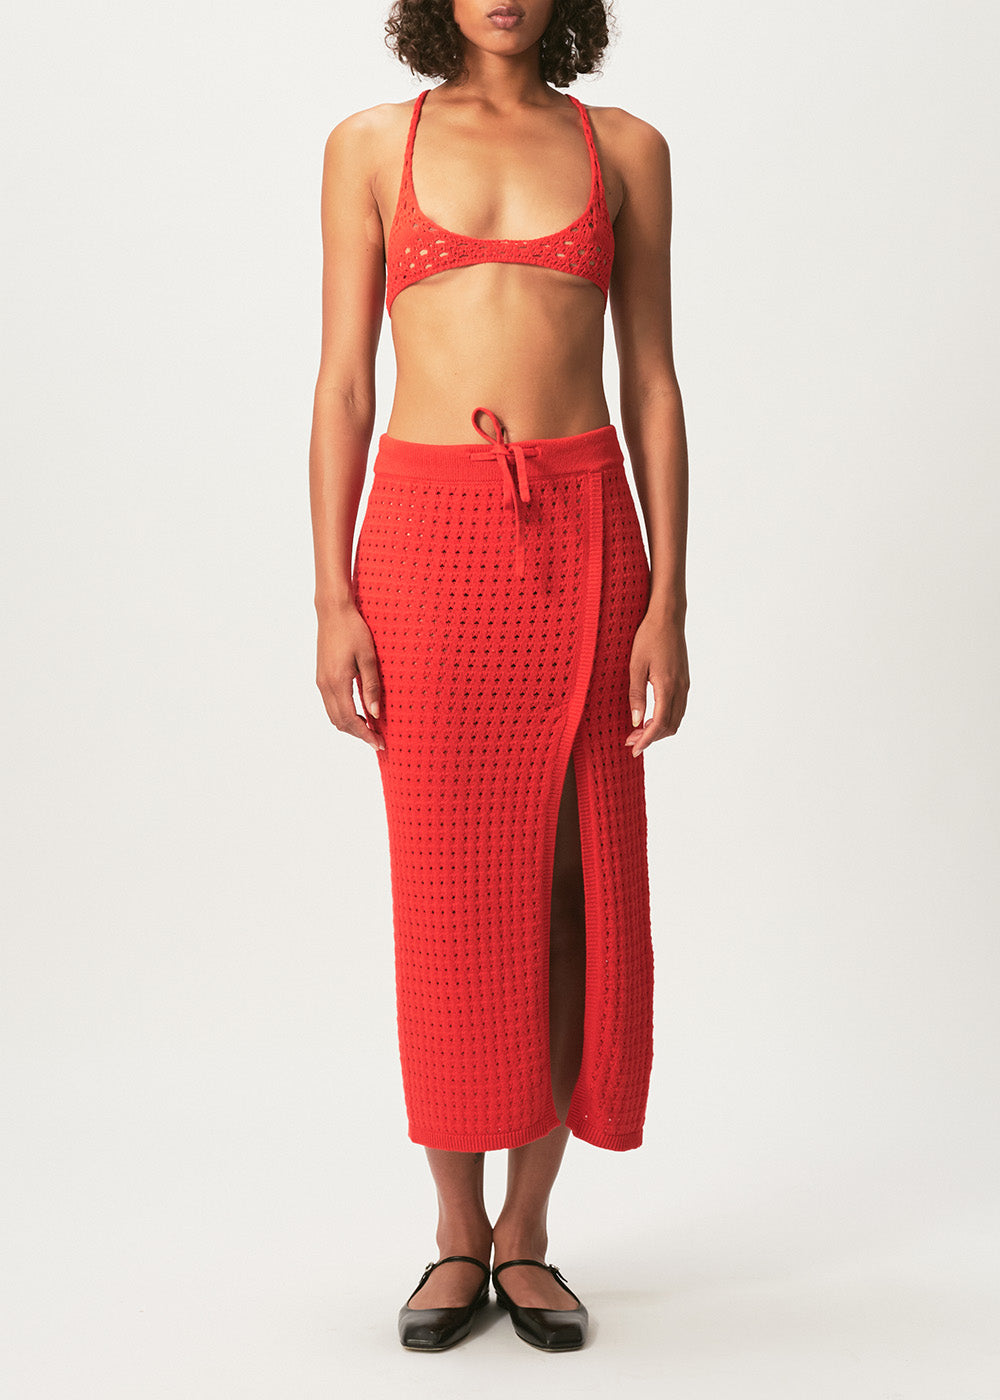 Mona Crochet Skirt - Medium / Red